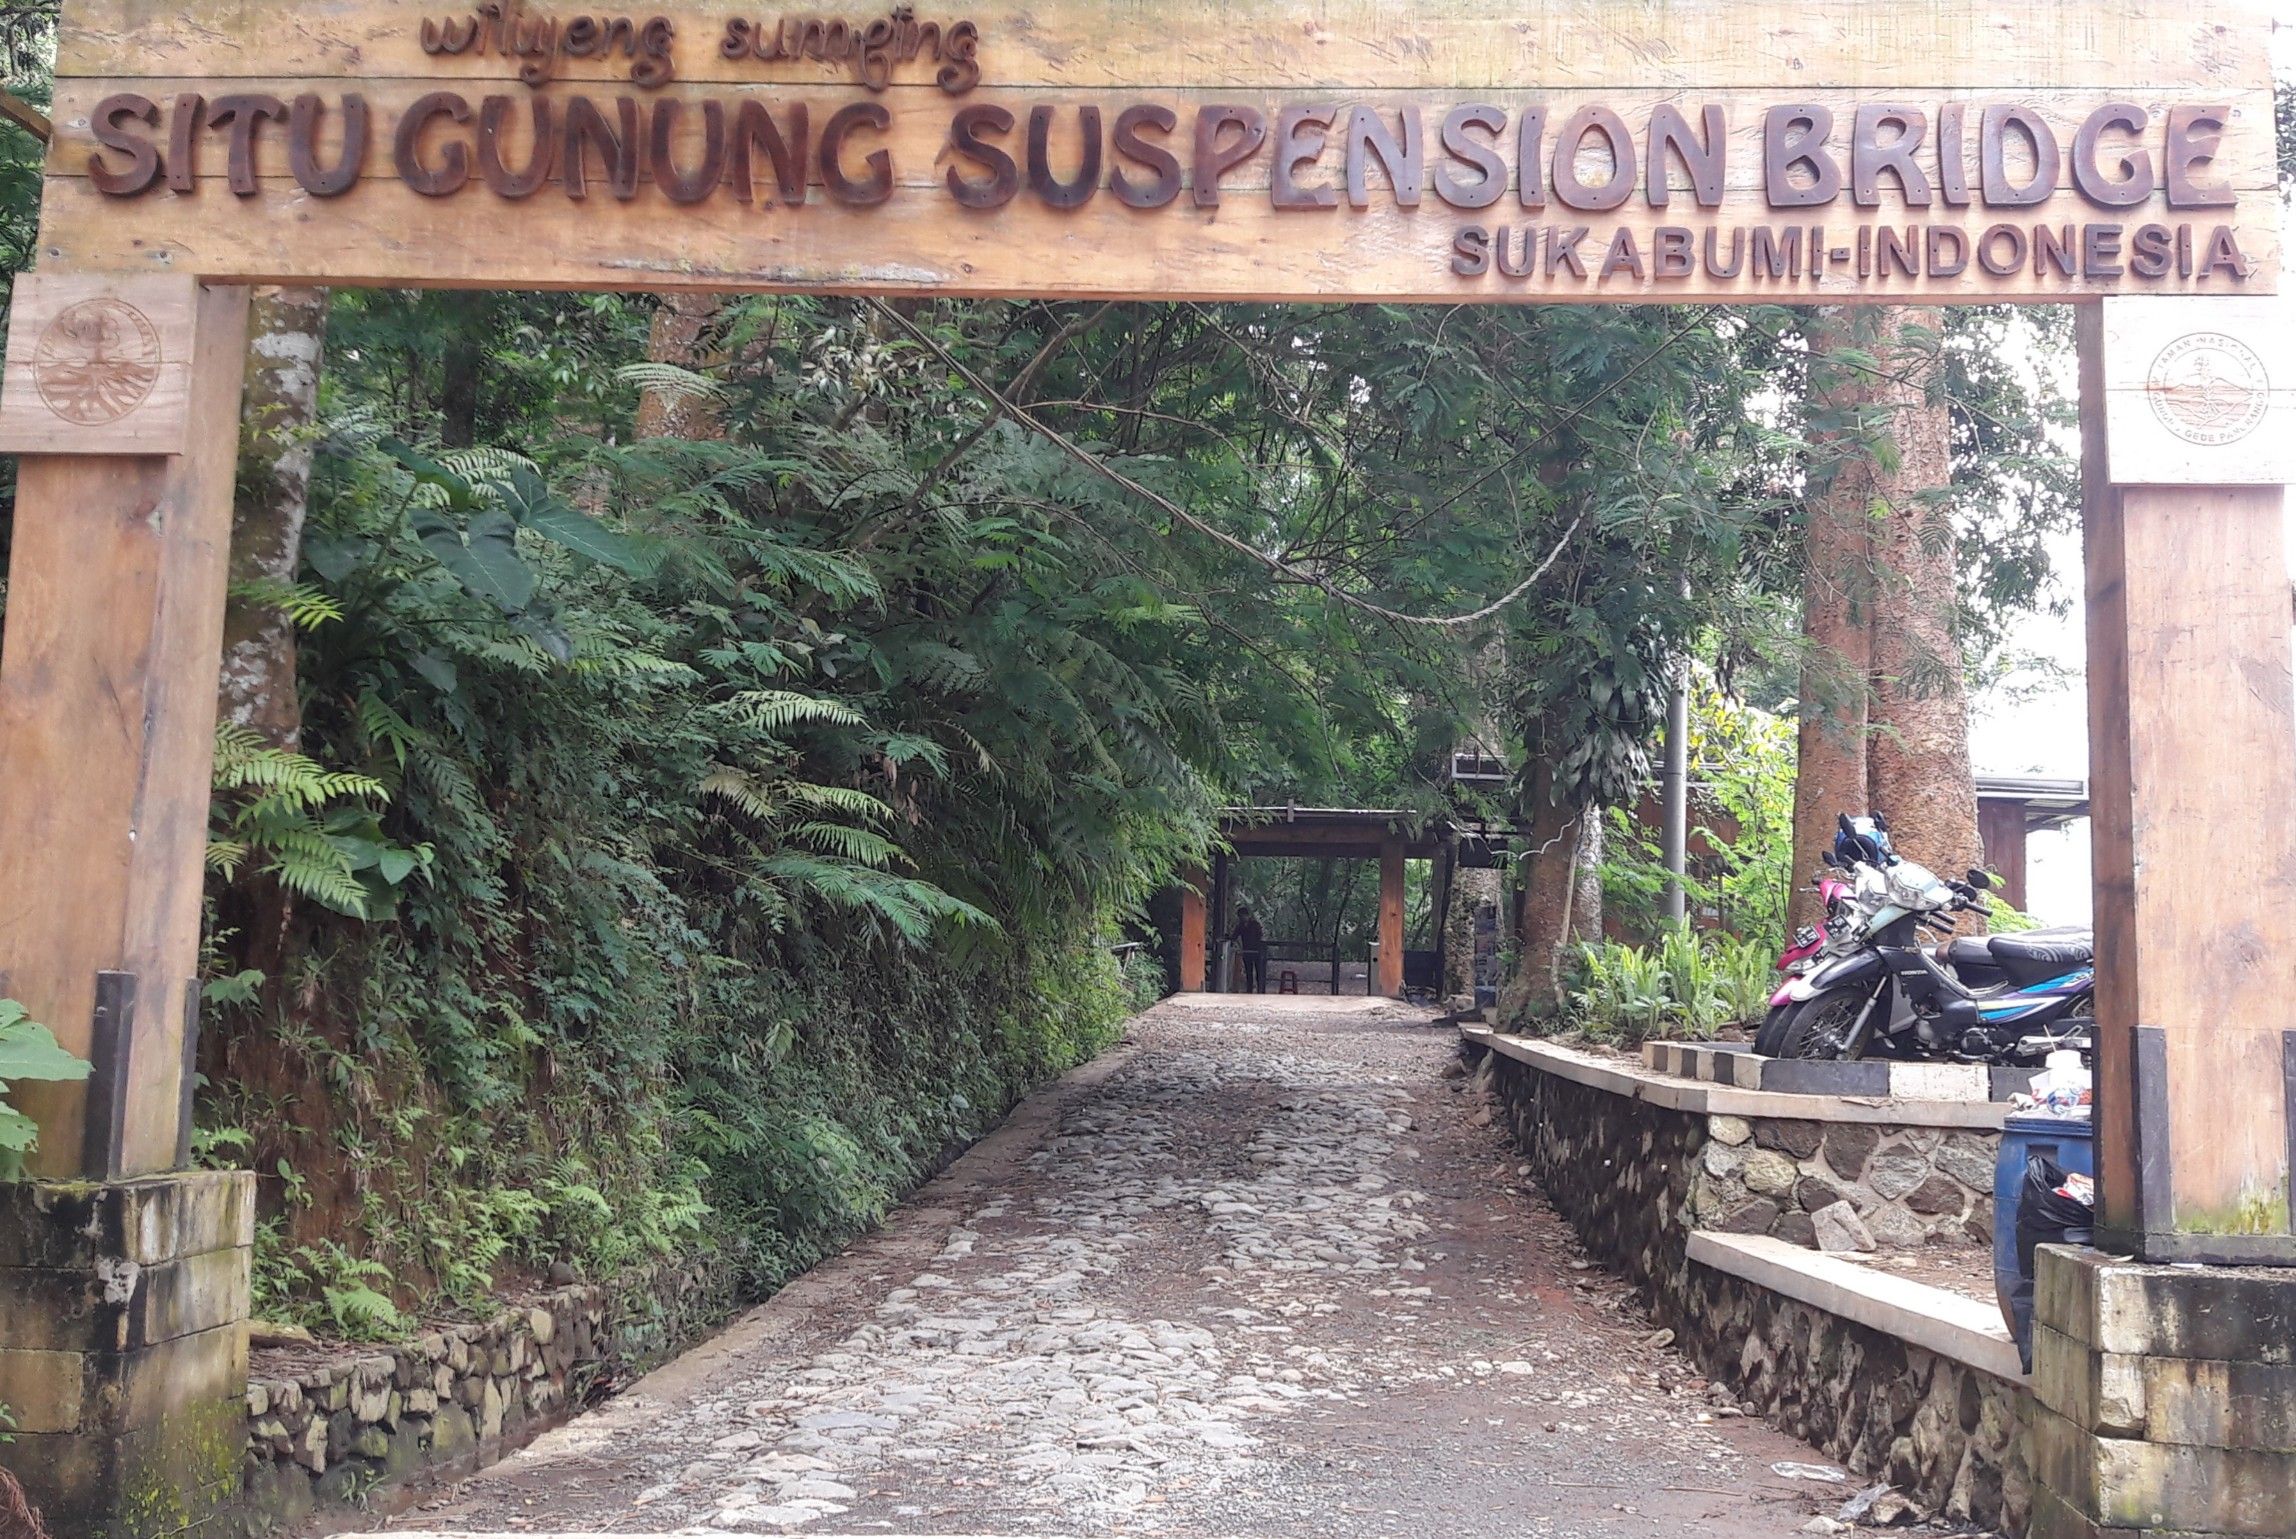 Ini merupakan pintu masuk di area wisata situ gunung